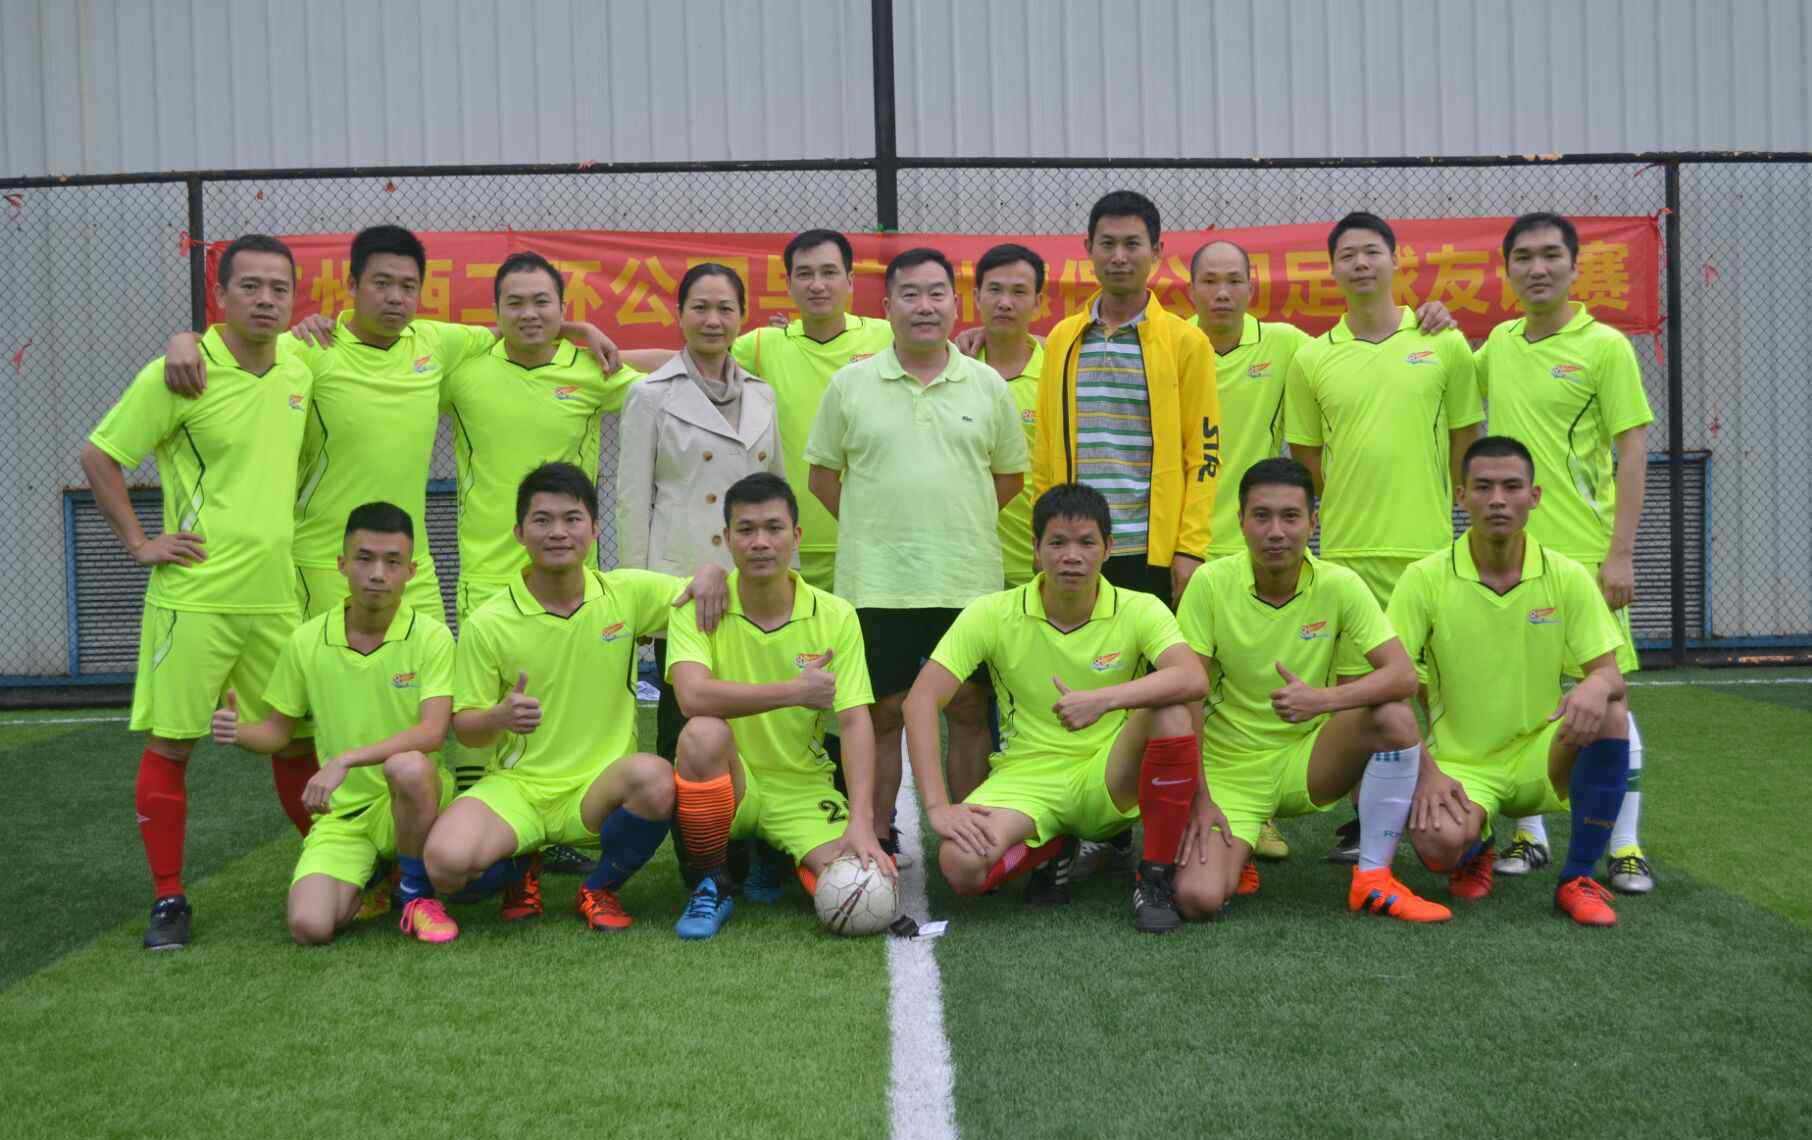 穗保 穗保公司工会组织职工参加足球友谊赛活动